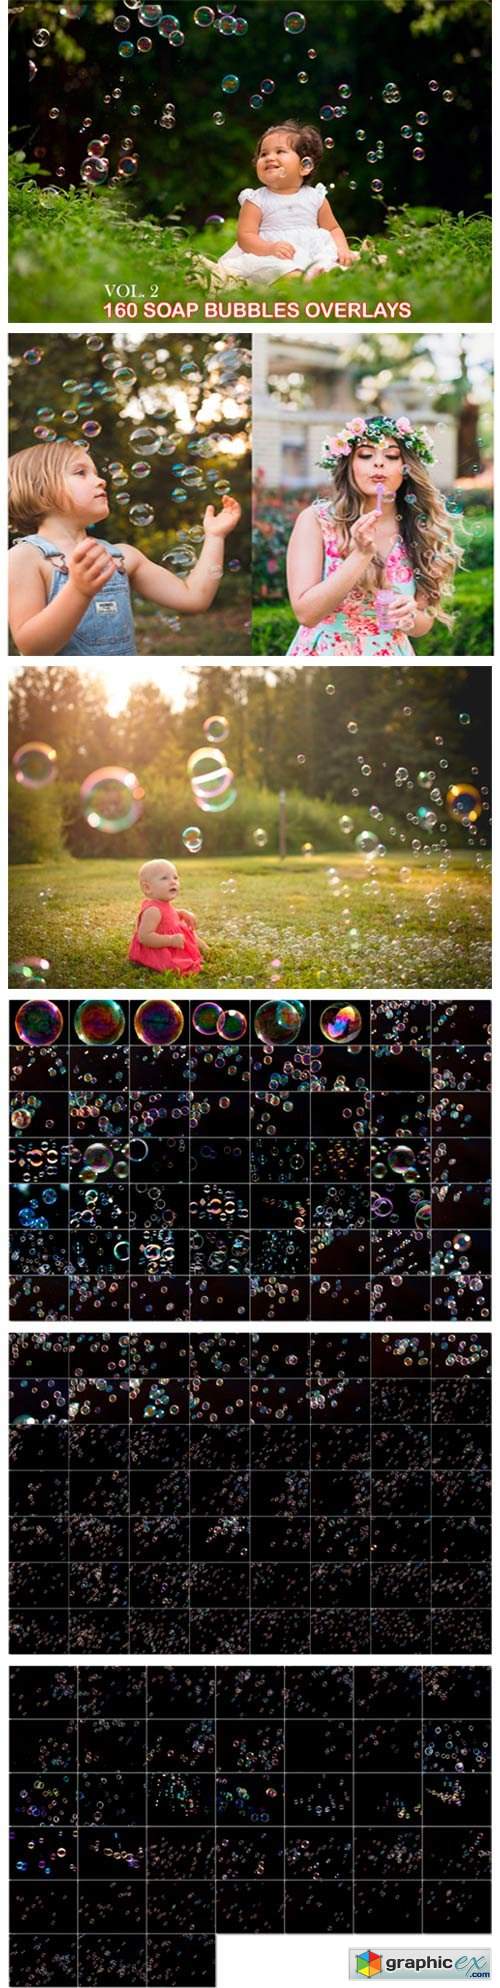  160 Soap Bubbles Photoshop Overlays 